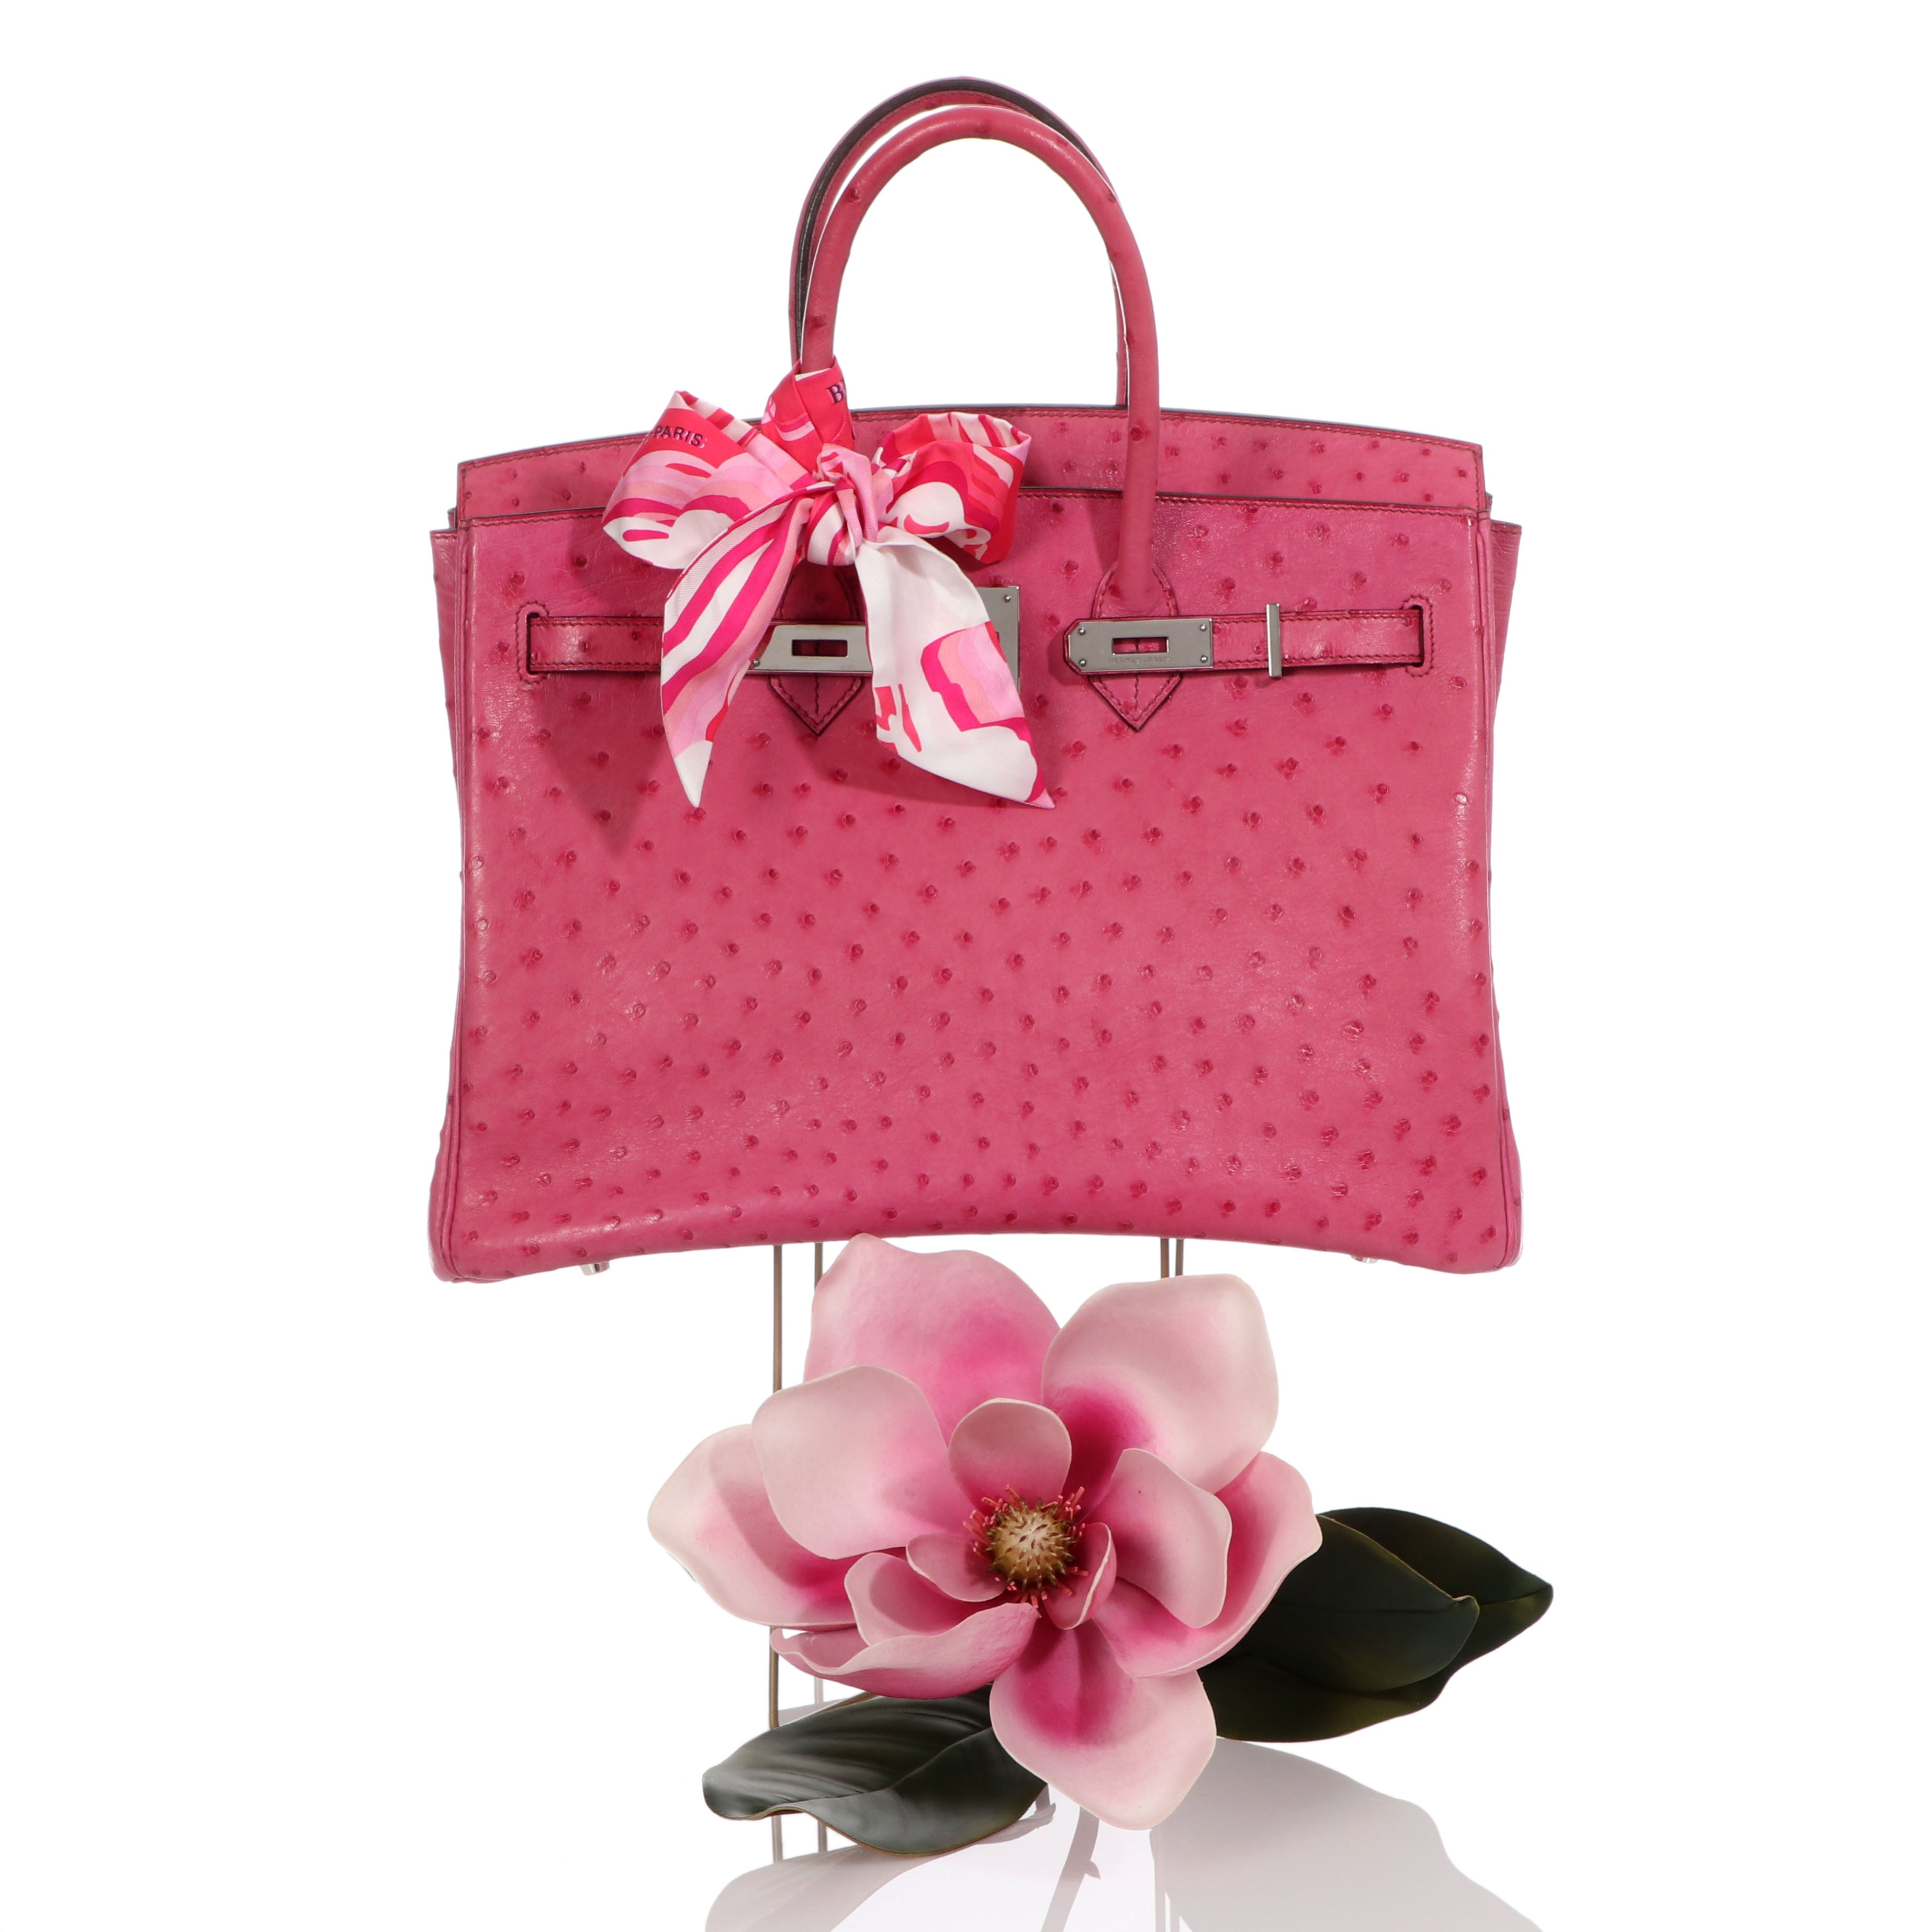 Hermes 30cm Fuchsia Pink Ostrich Gold Plated Birkin Bag - Yoogi's Closet